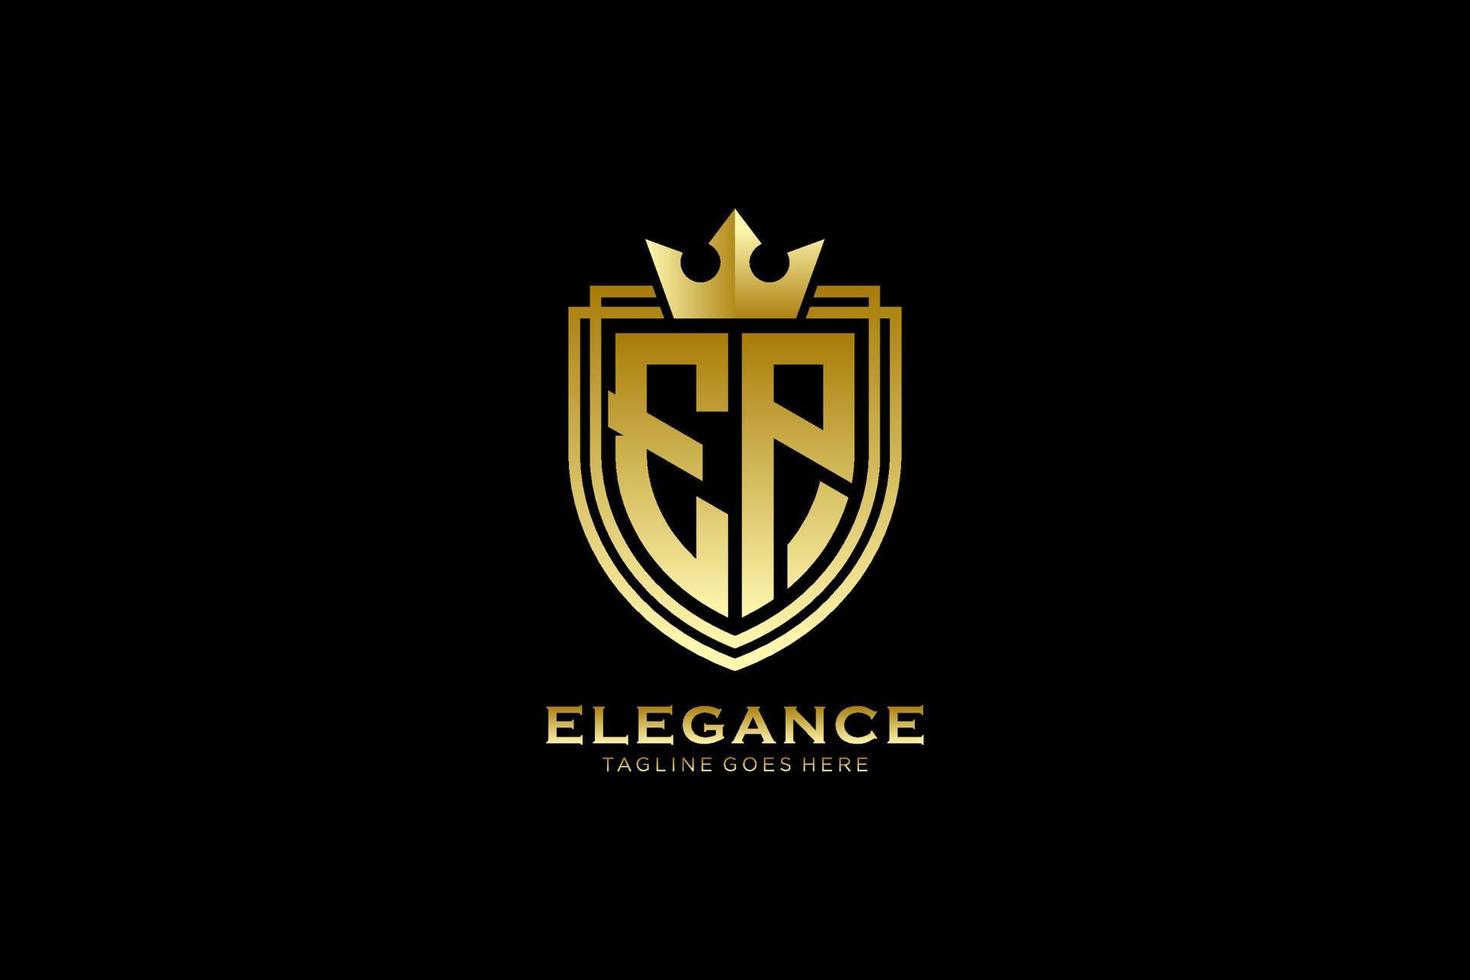 logo monogramme de luxe élégant initial ep ou modèle de badge avec volutes et couronne royale - parfait pour les projets de marque de luxe vecteur